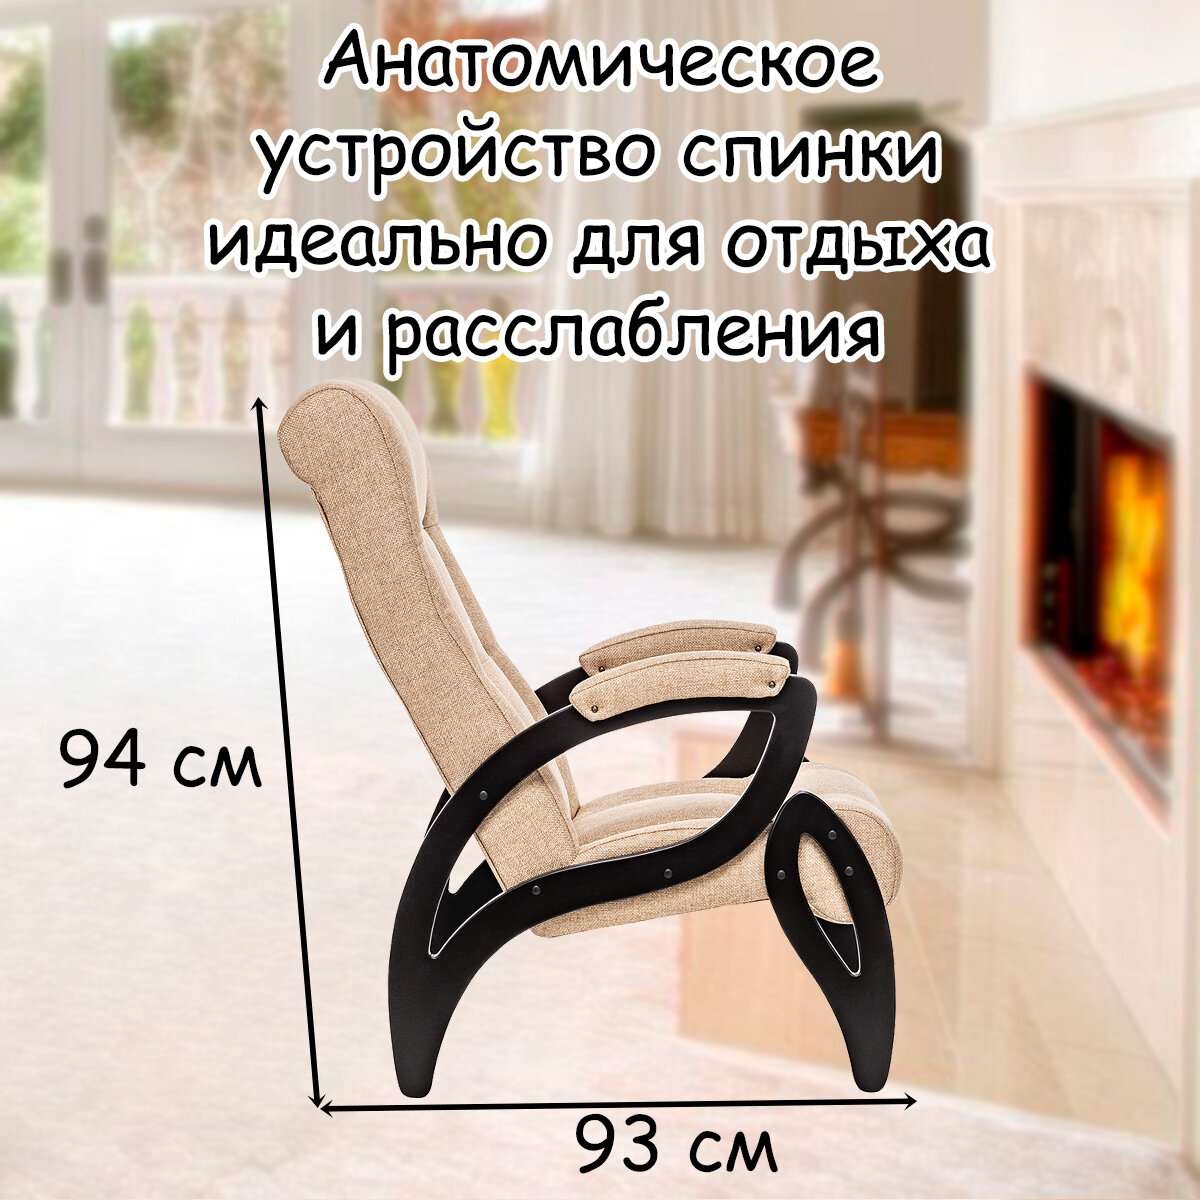 Кресло для взрослых 58.5х87х99 см, модель 51, malta, цвет: Мalta 03А (бежевый), каркас: Venge (черный) - фотография № 4